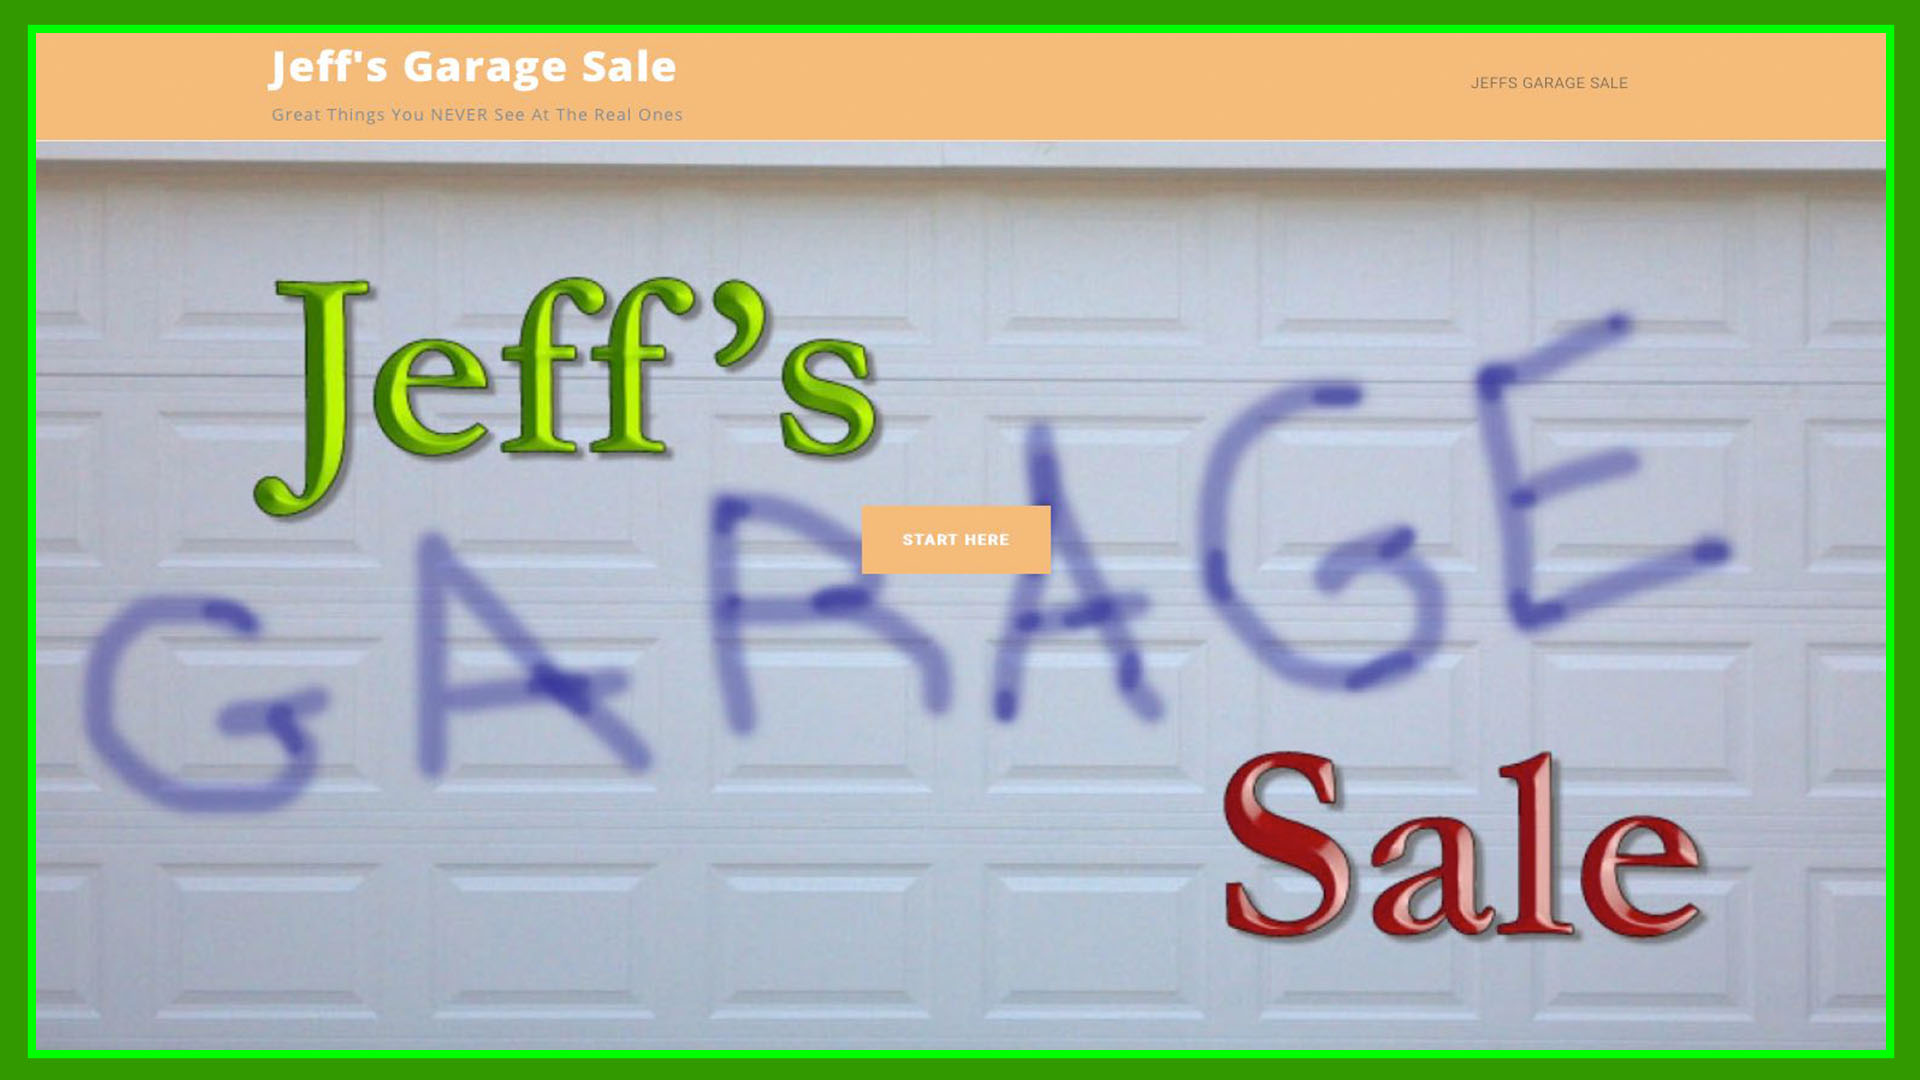 Jeff’s Garage Sale